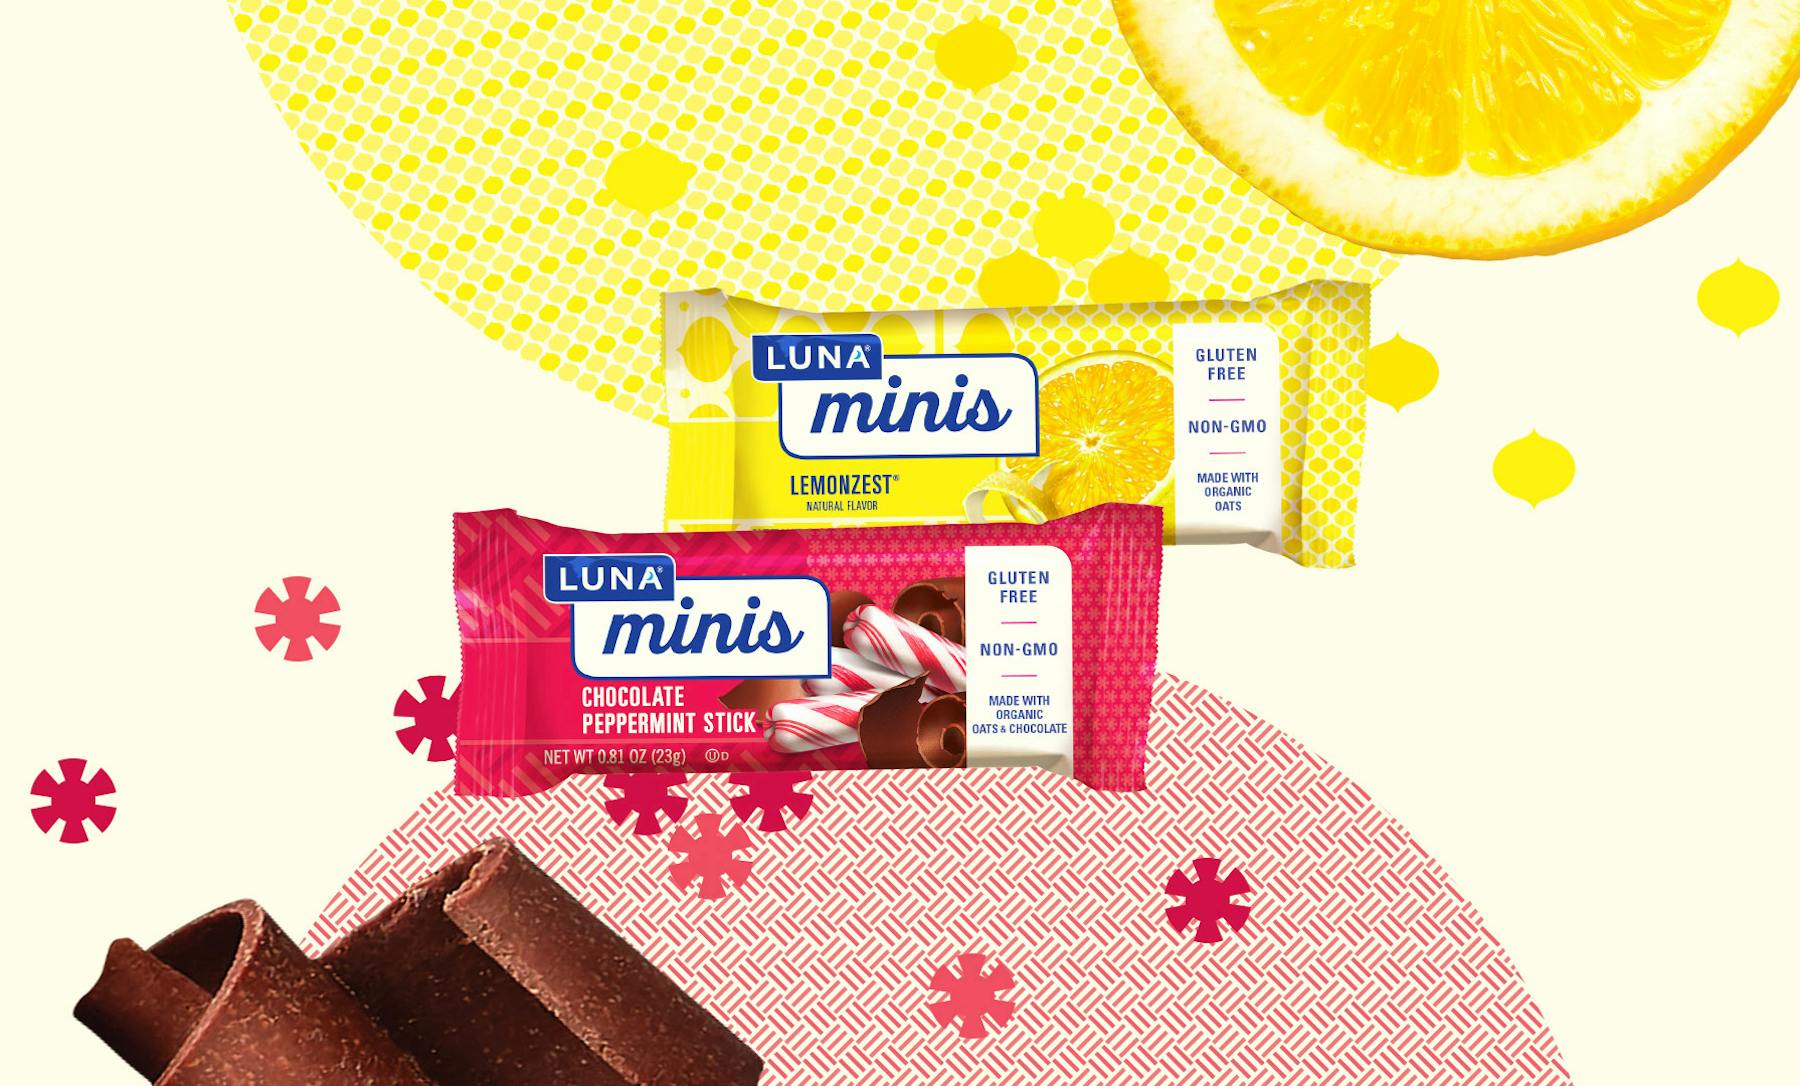 Luna minis chocolate peppermint lemonzest flavors